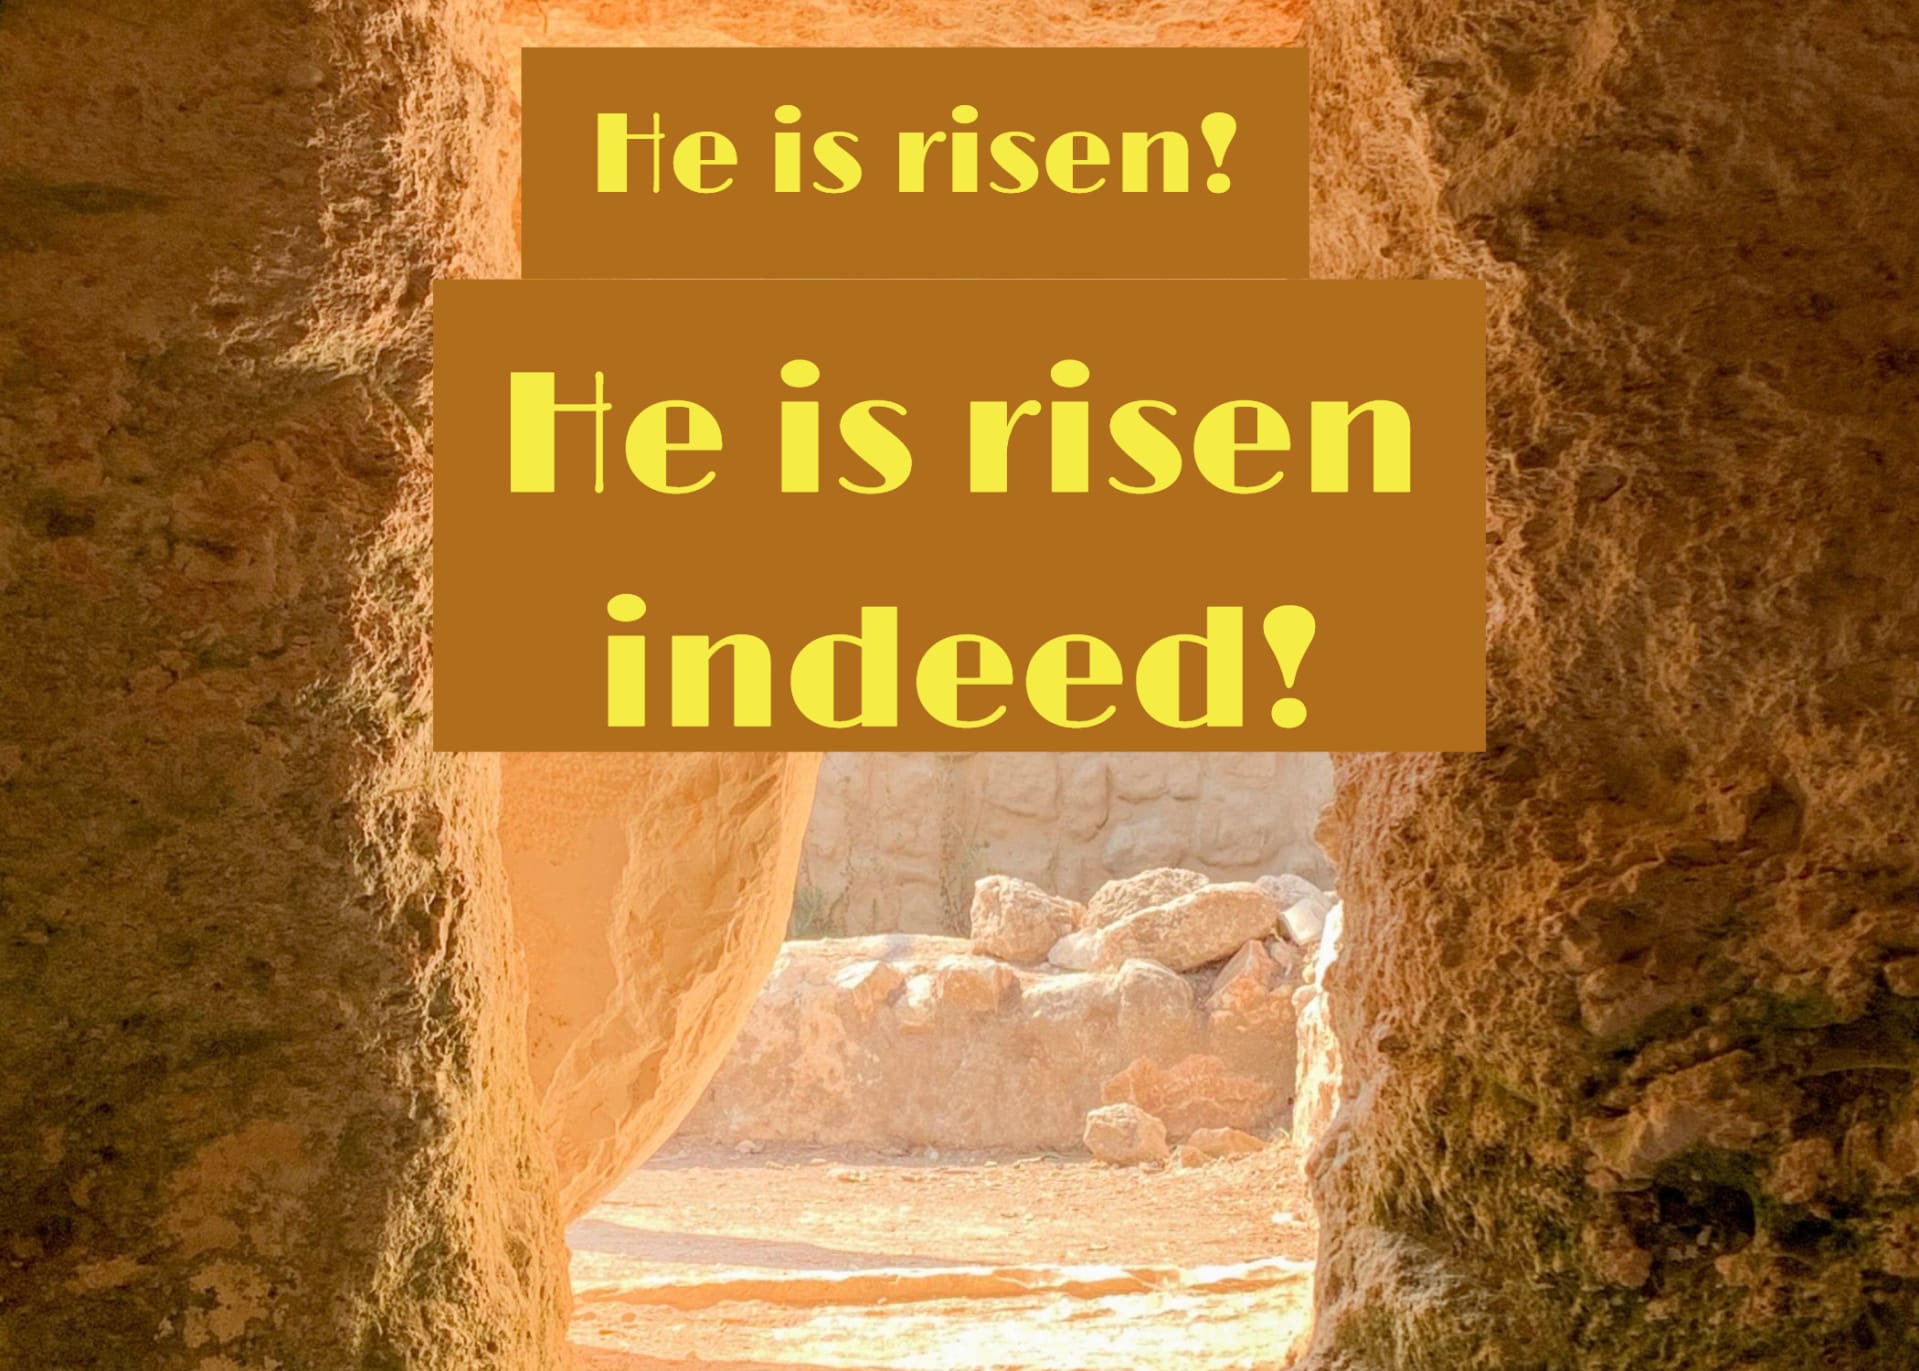 He is risen! He is risen indeed!